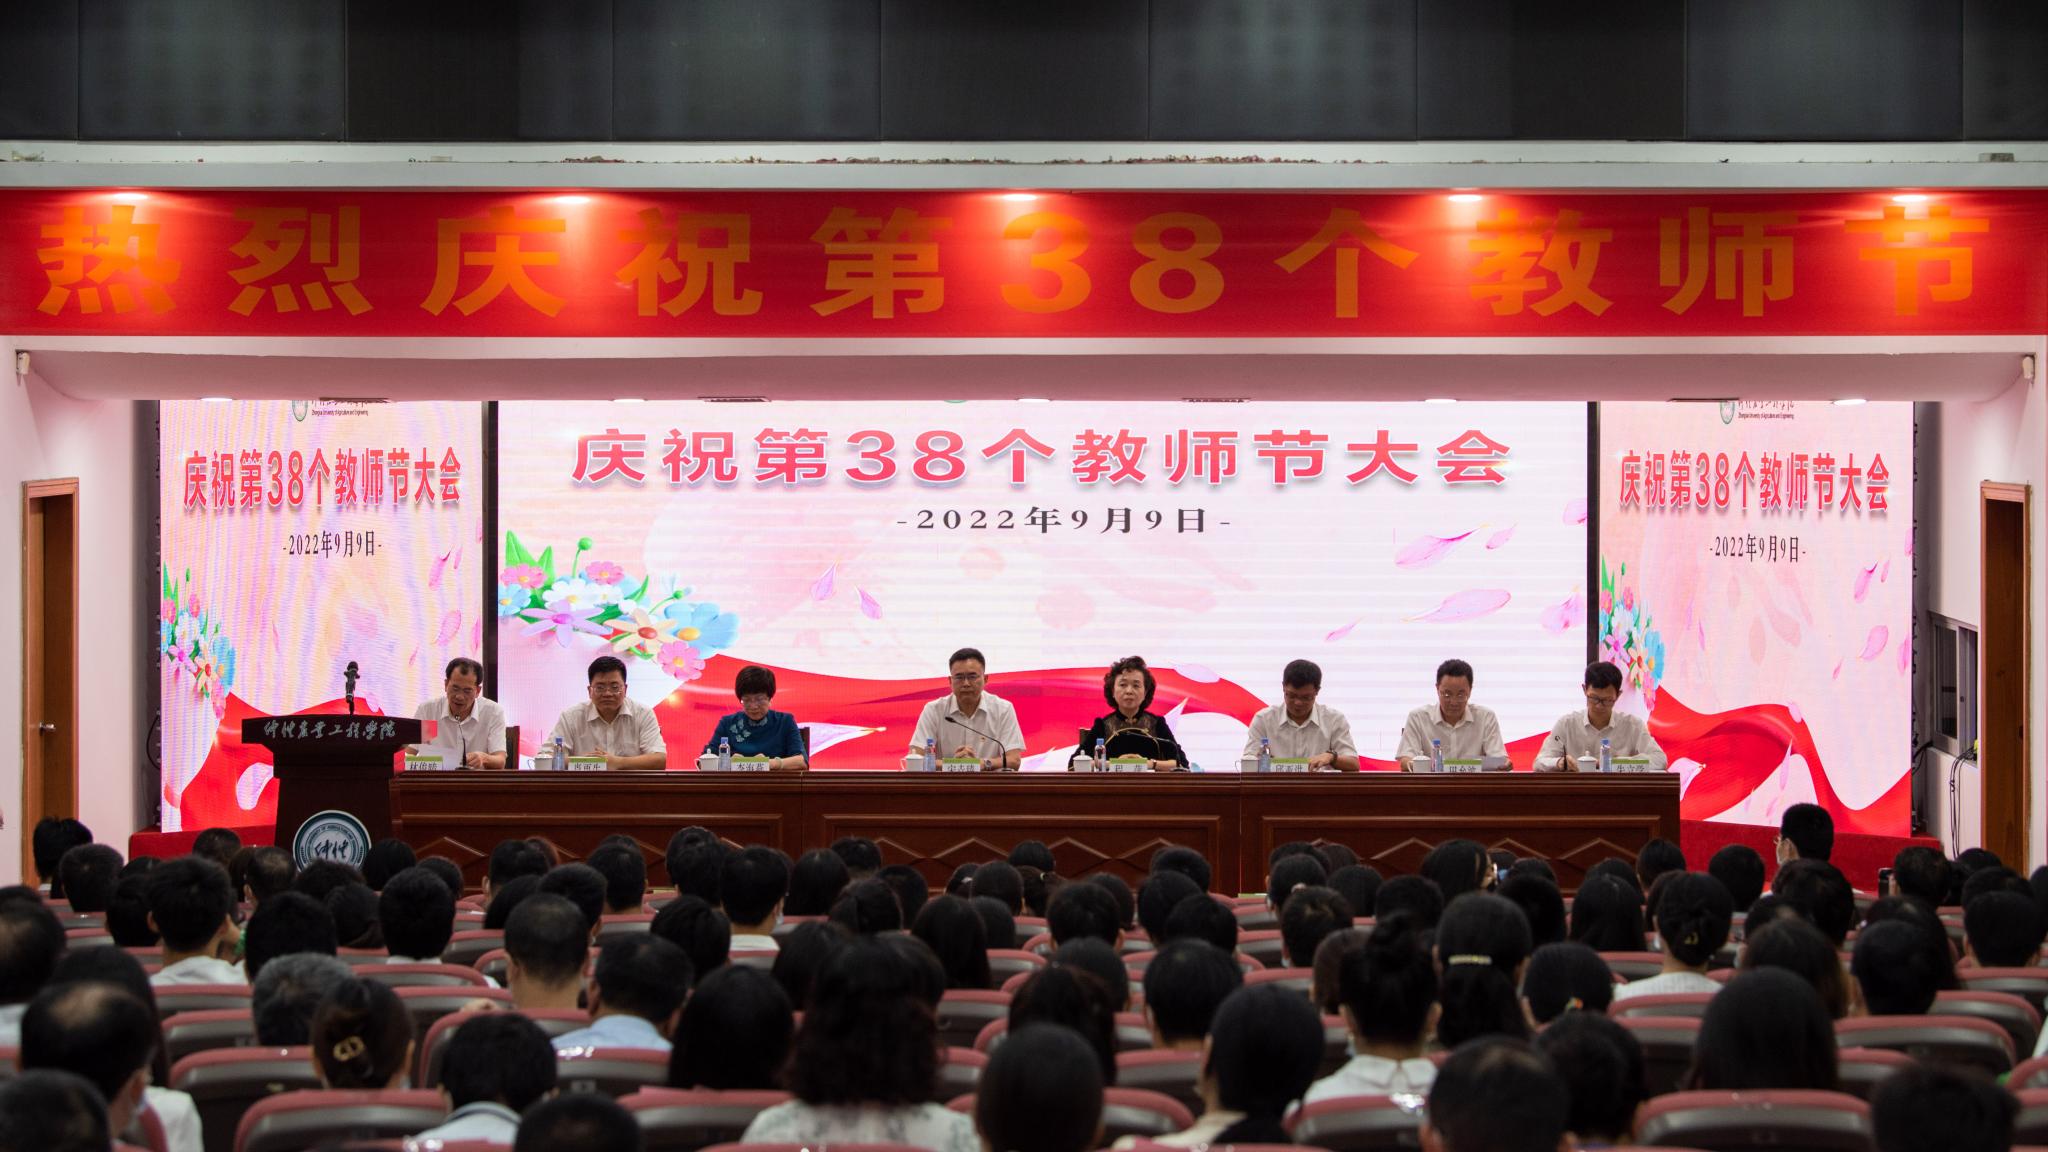 迎接党的二十大 培根铸魂育新人 学校举办庆祝第38个教师节大会